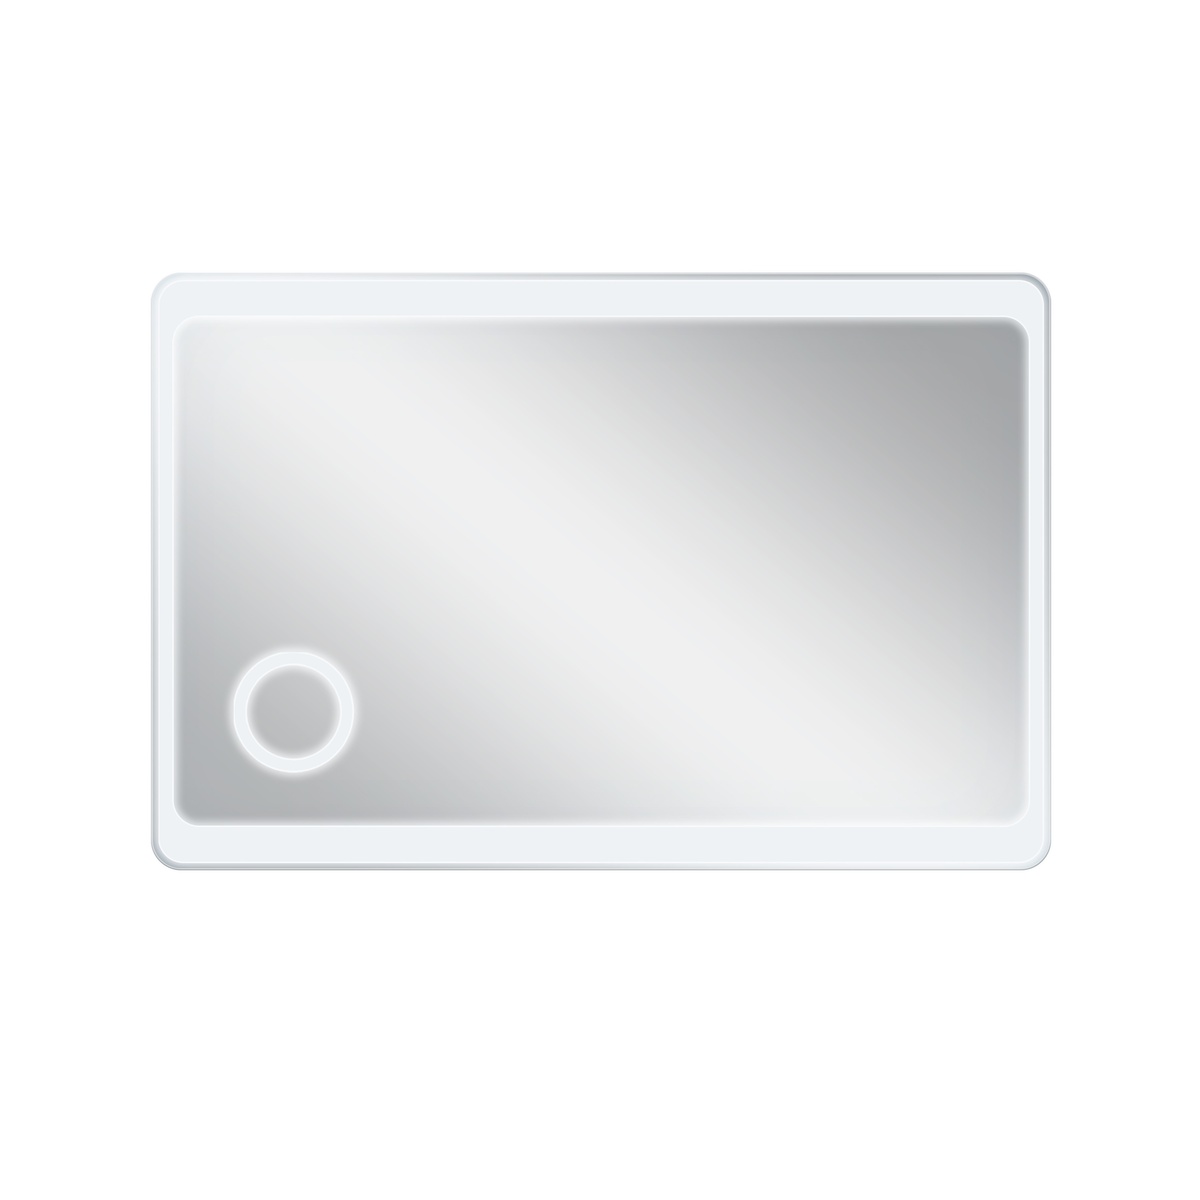 Зеркало прямоугольное для ванной Q-TAP Aquarius 80x120см c подсветкой QT2178141980120W